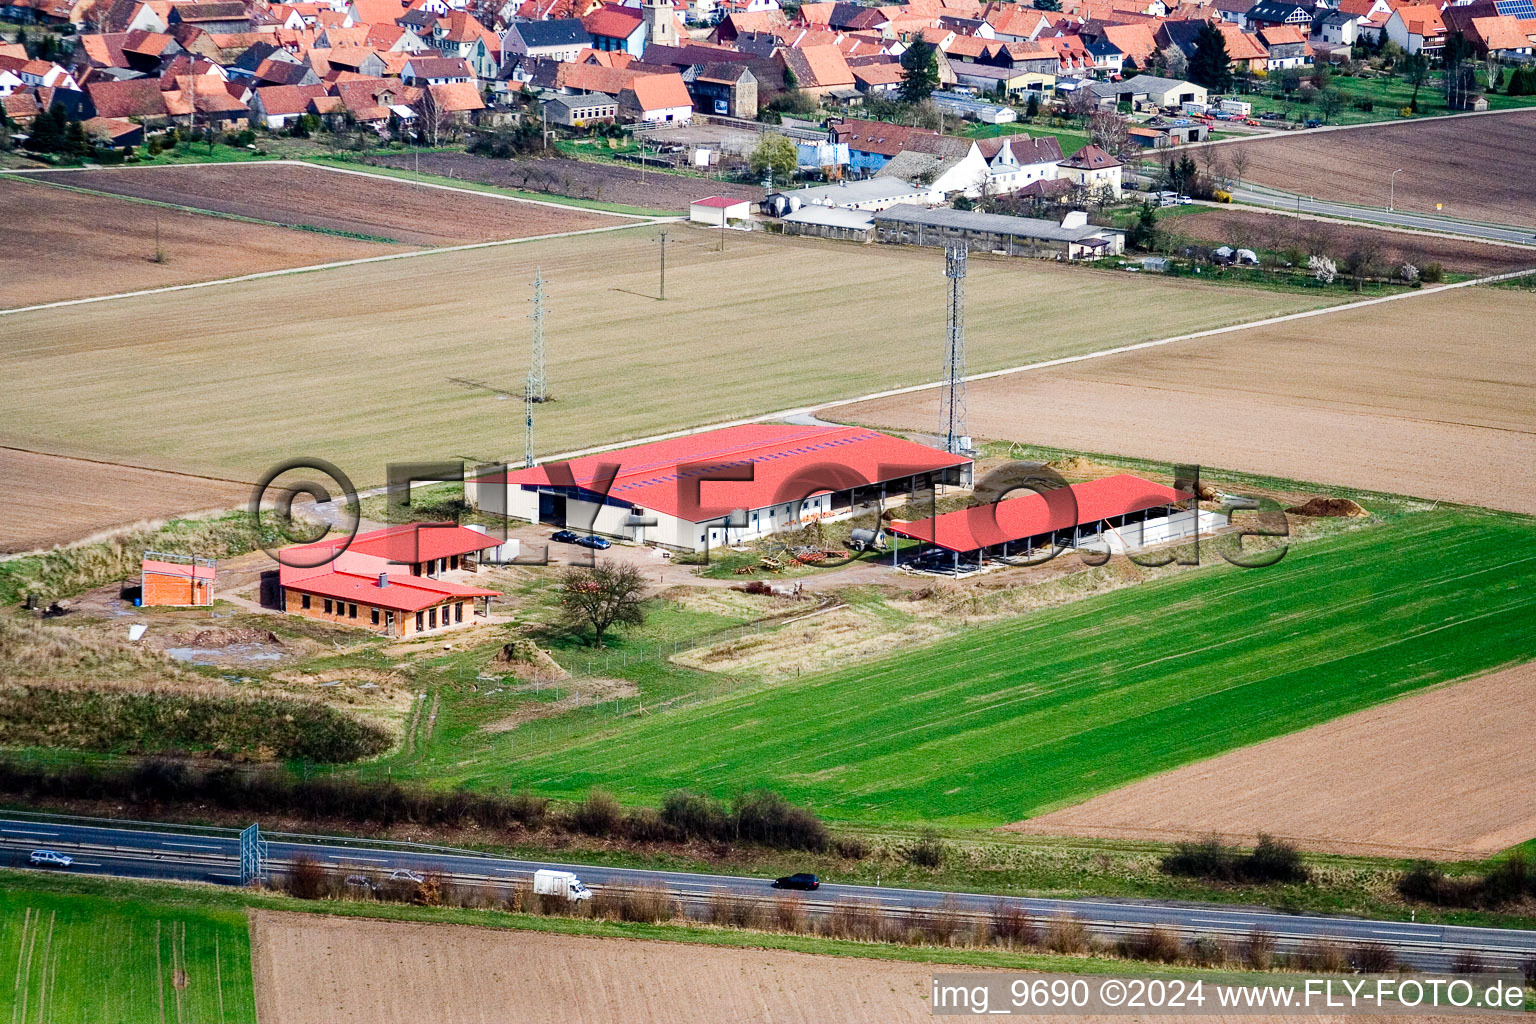 Hühnerhof Eierfarm in Erlenbach bei Kandel im Bundesland Rheinland-Pfalz, Deutschland aus der Luft betrachtet